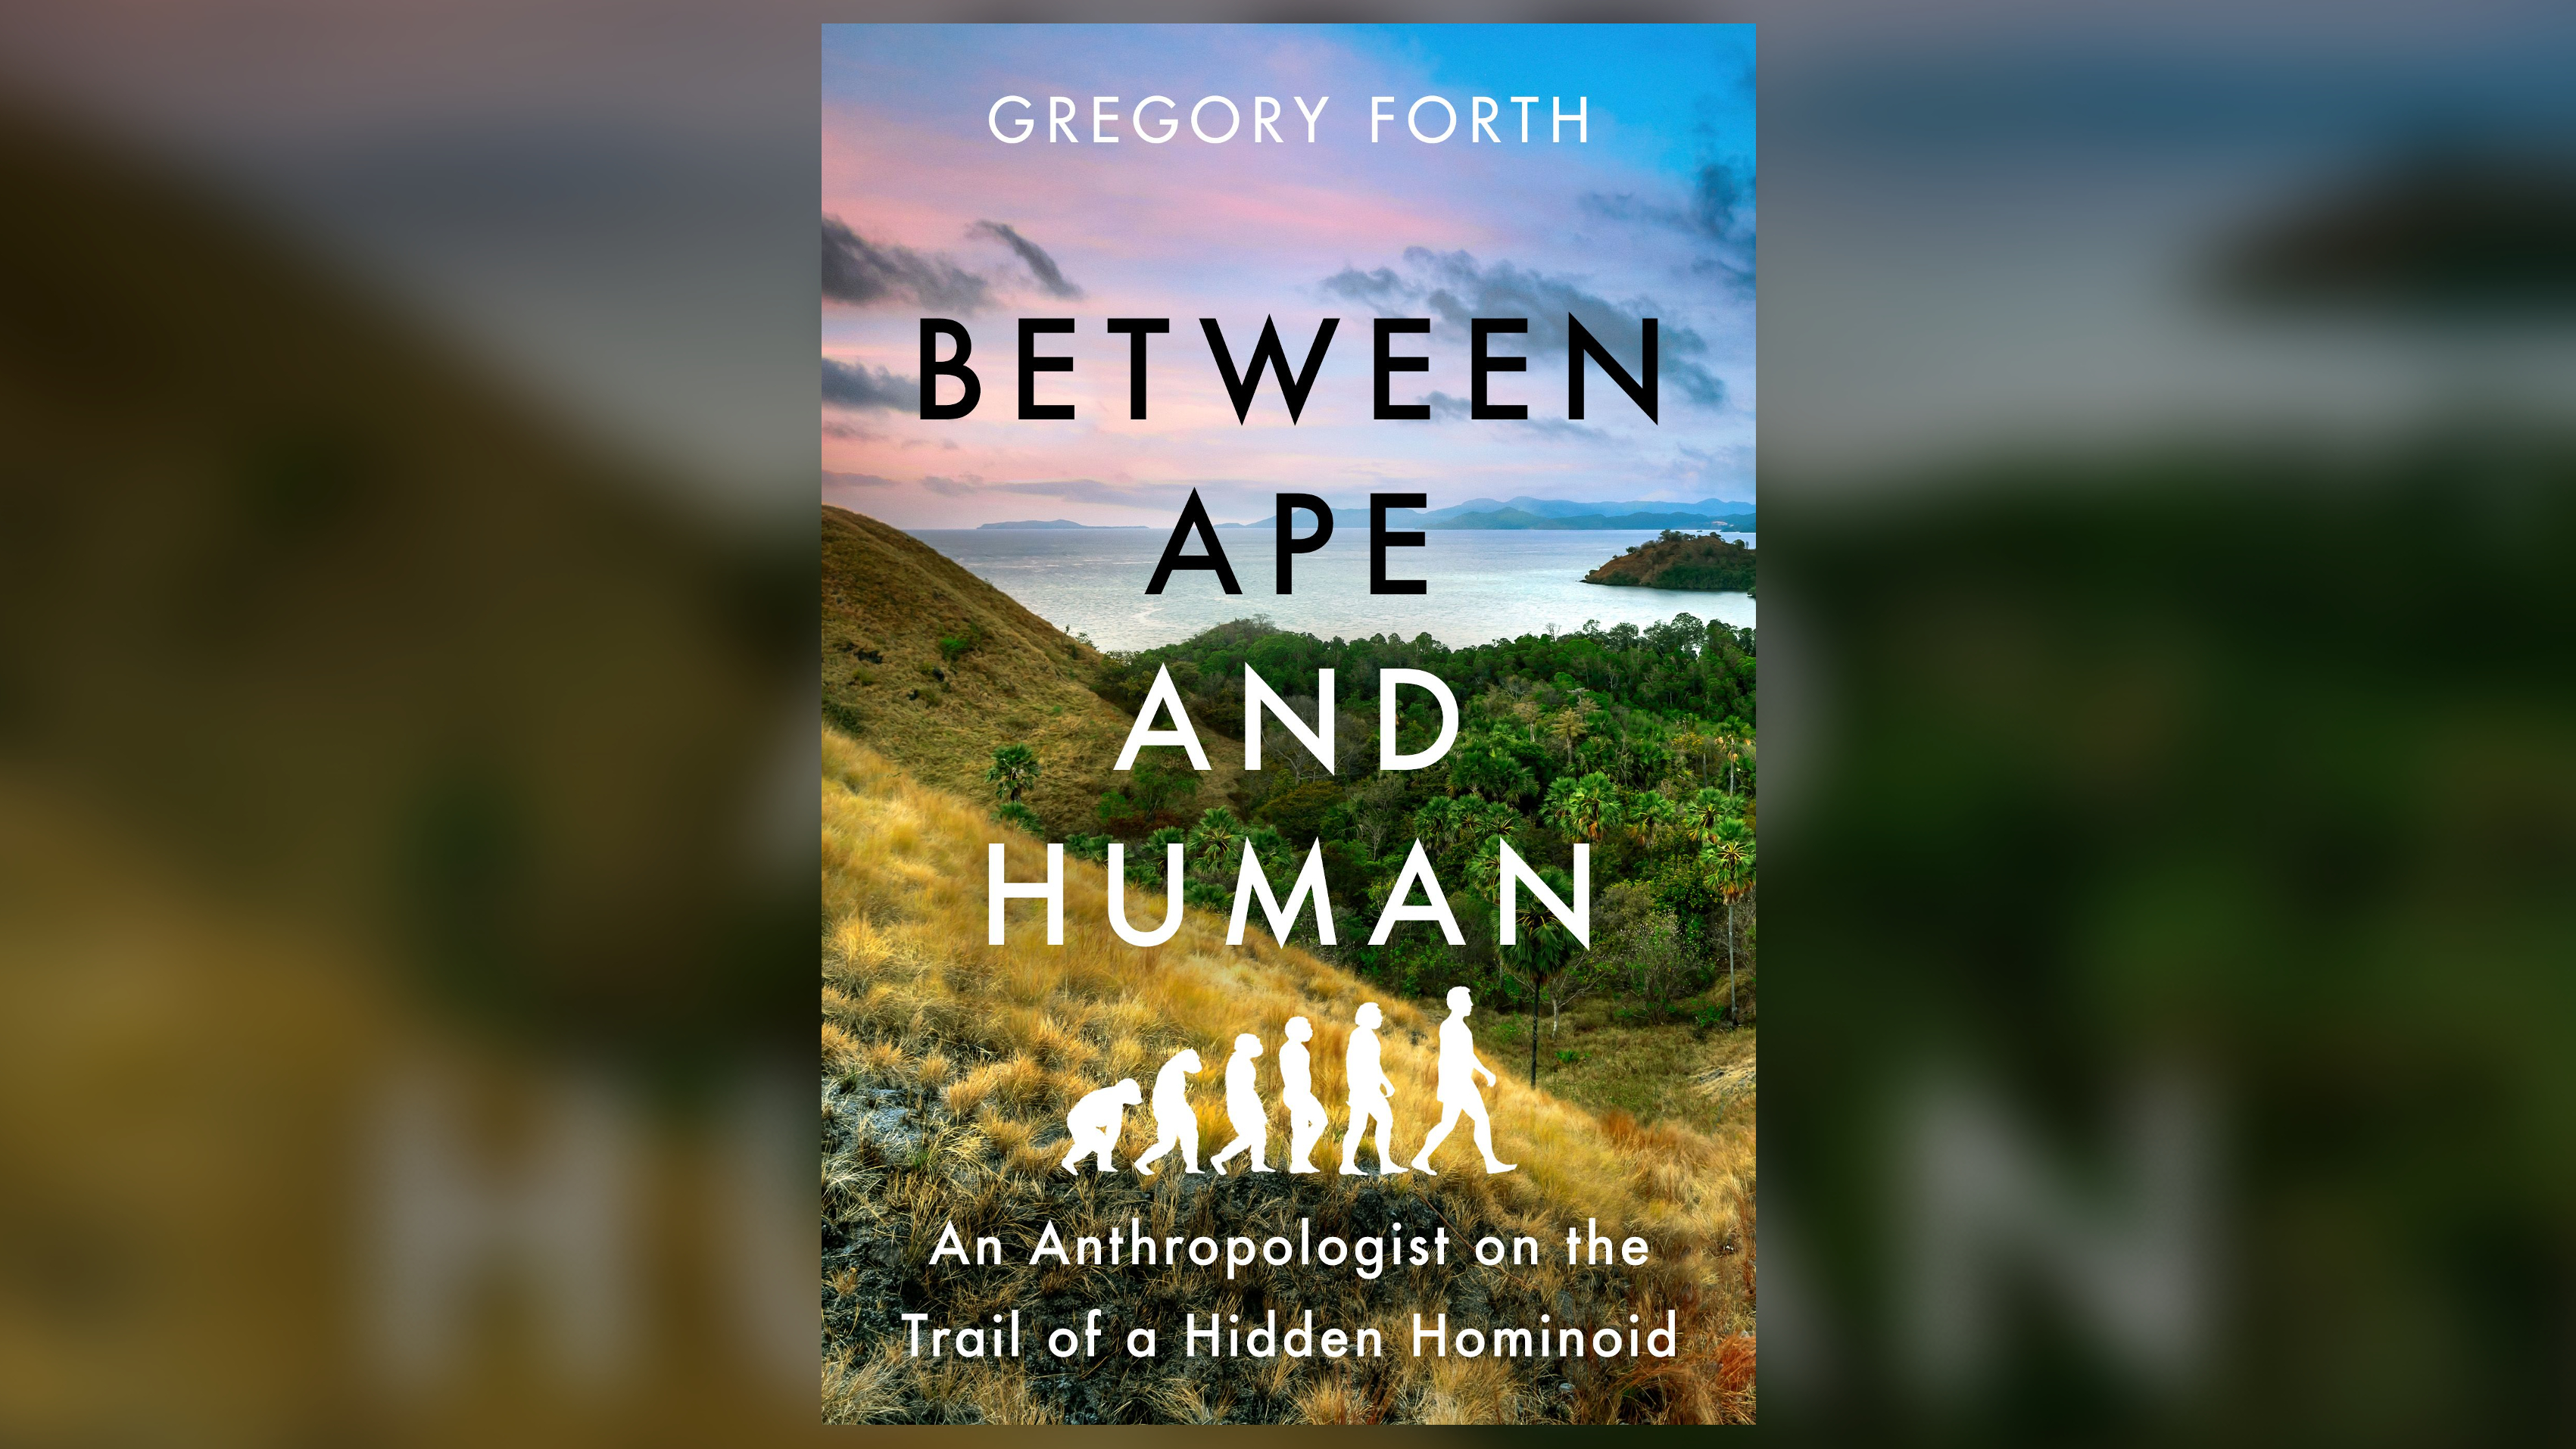 Un antepasado humano ‘hobbit’ puede estar escondido en Indonesia, según un nuevo libro controvertido